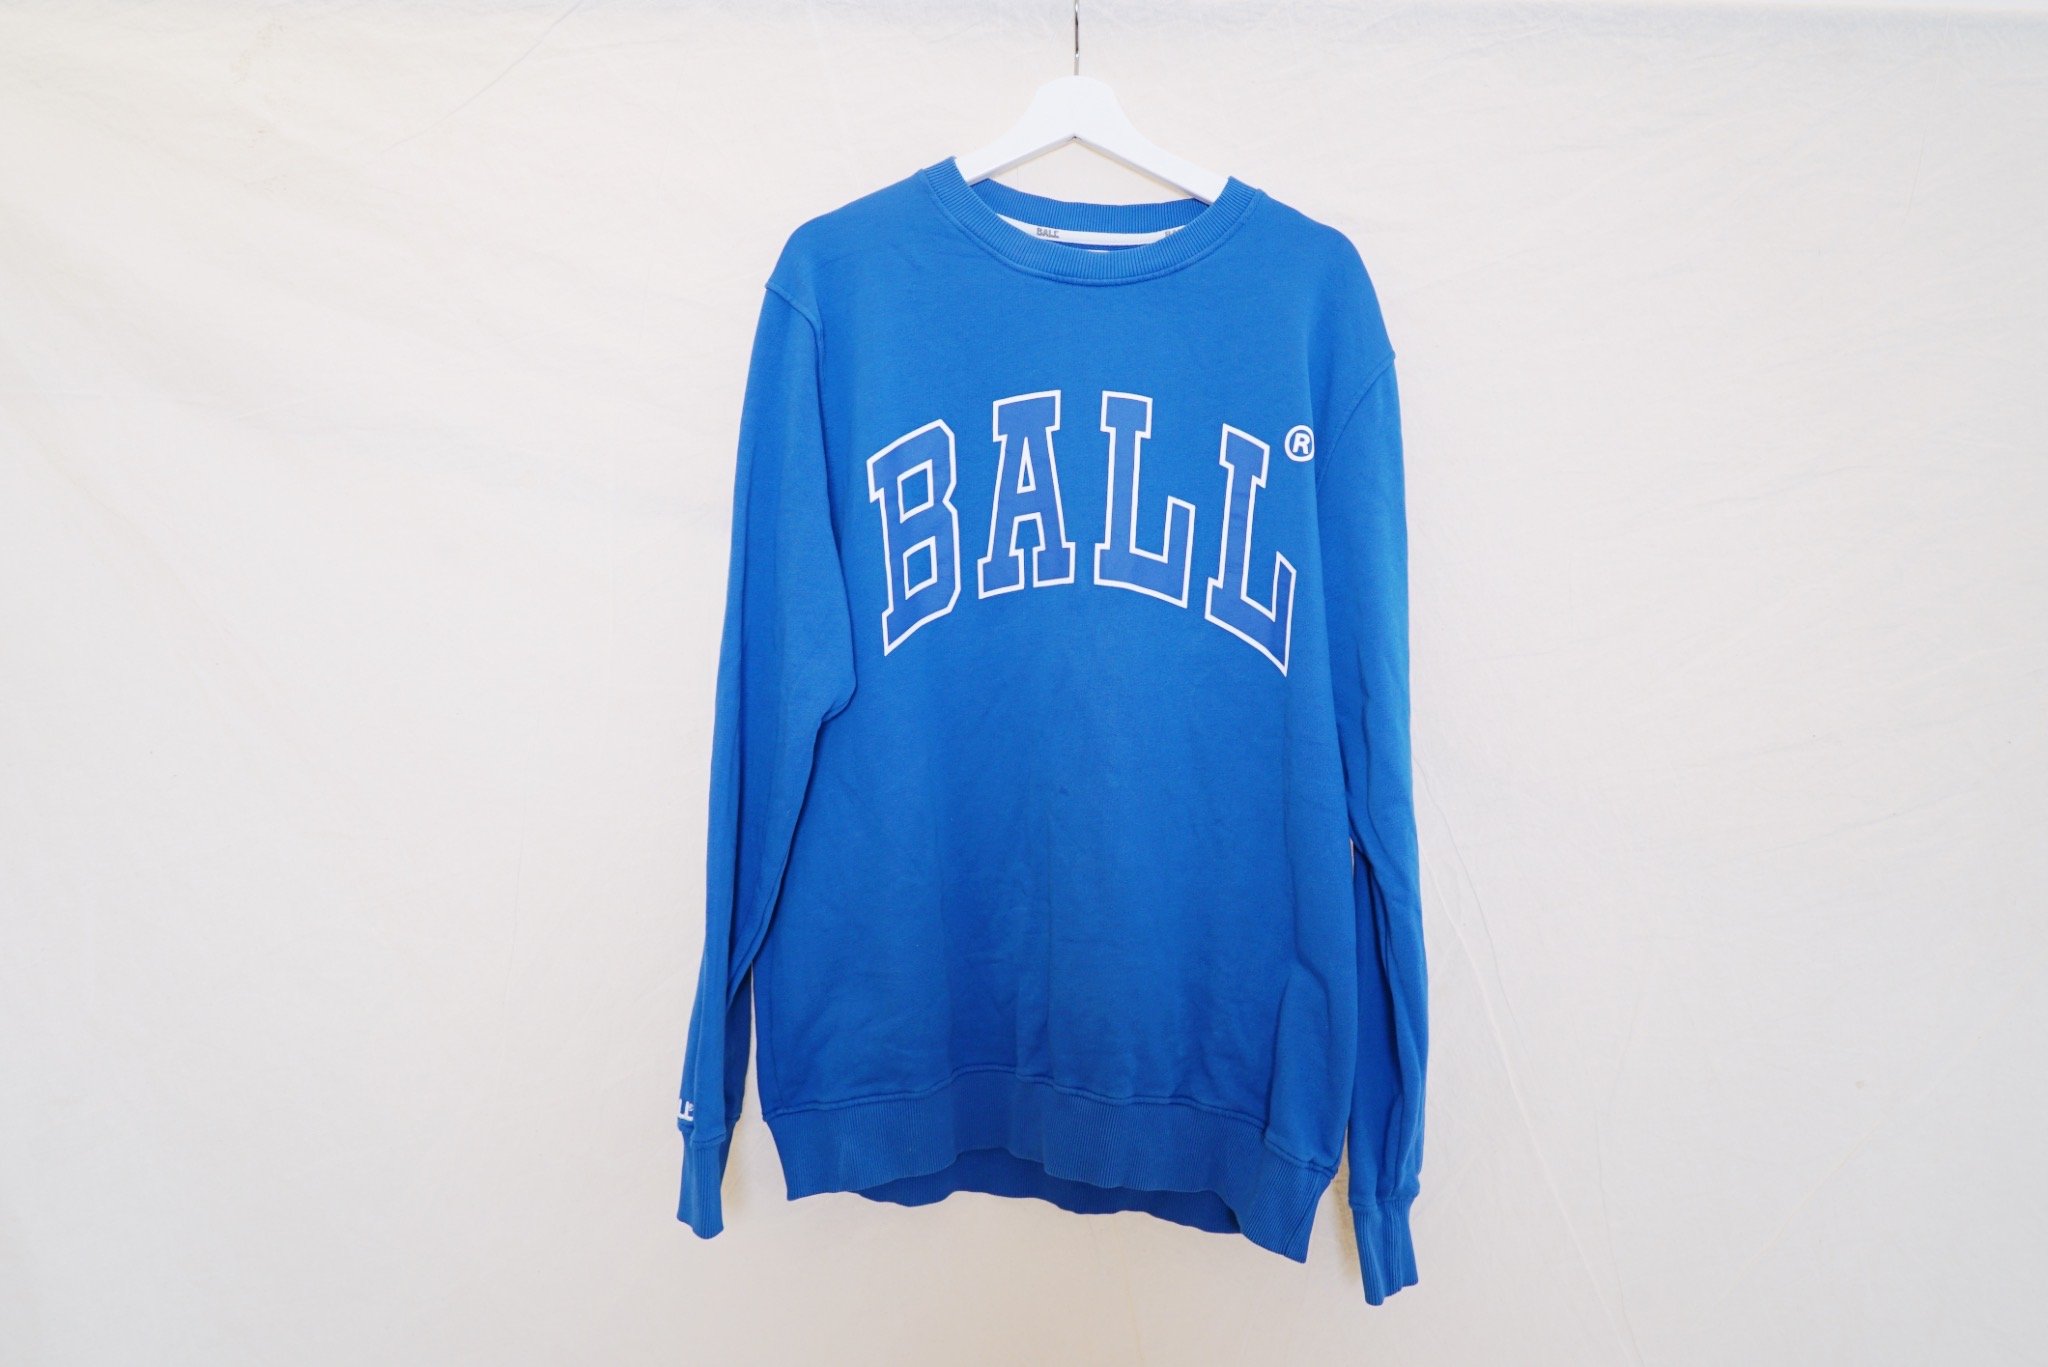 Ball sweater, 200 kr.